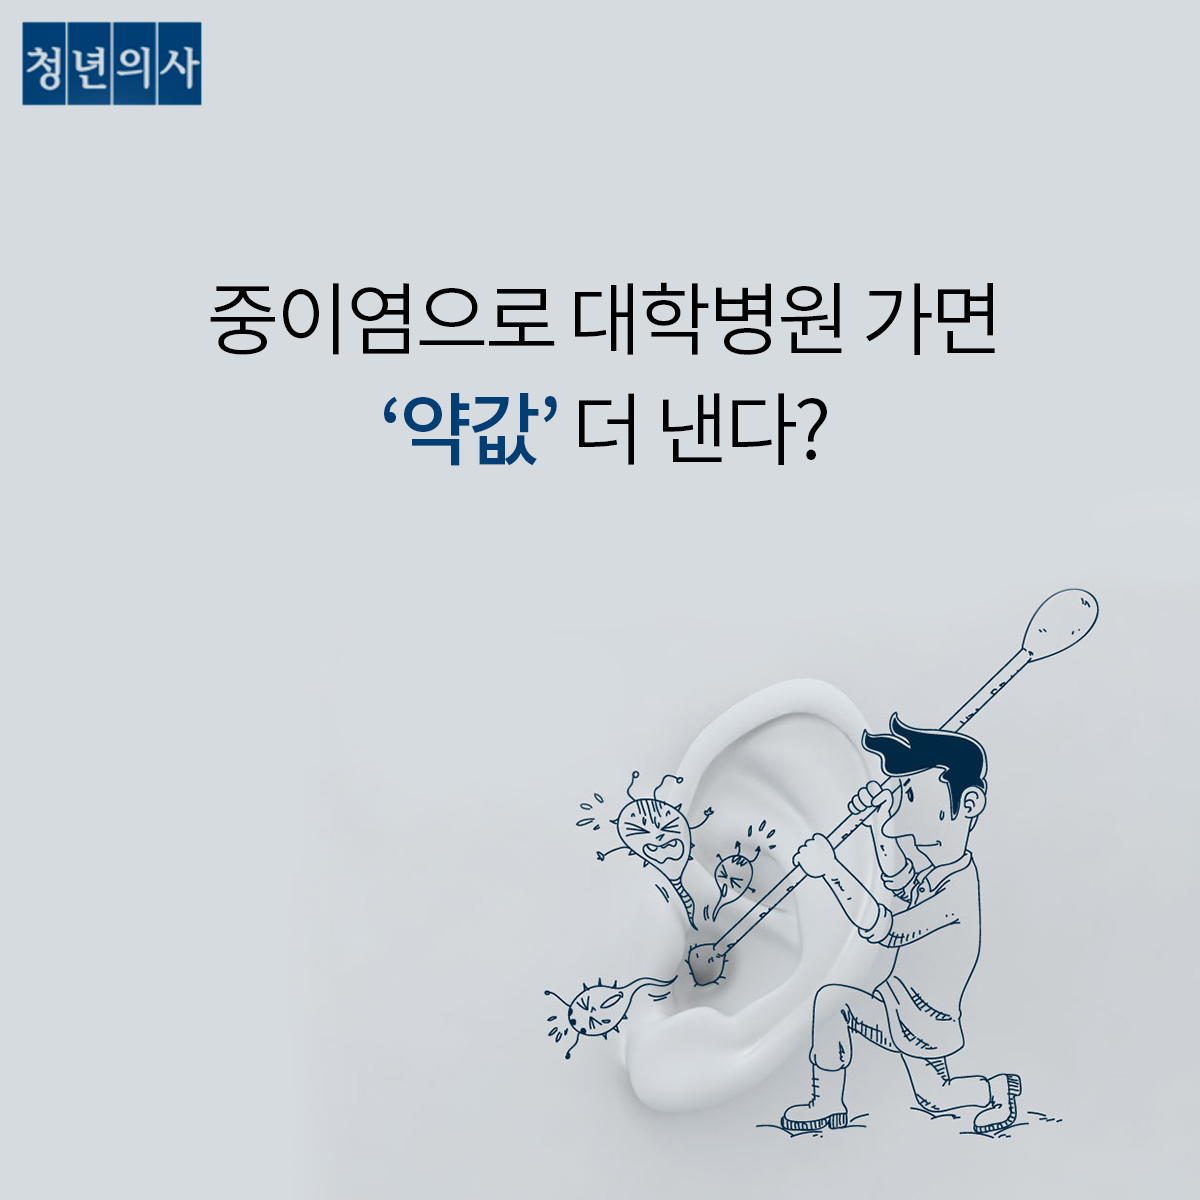 [카드뉴스] 중이염으로 대학병원 가면 '약값' 더 낸다?